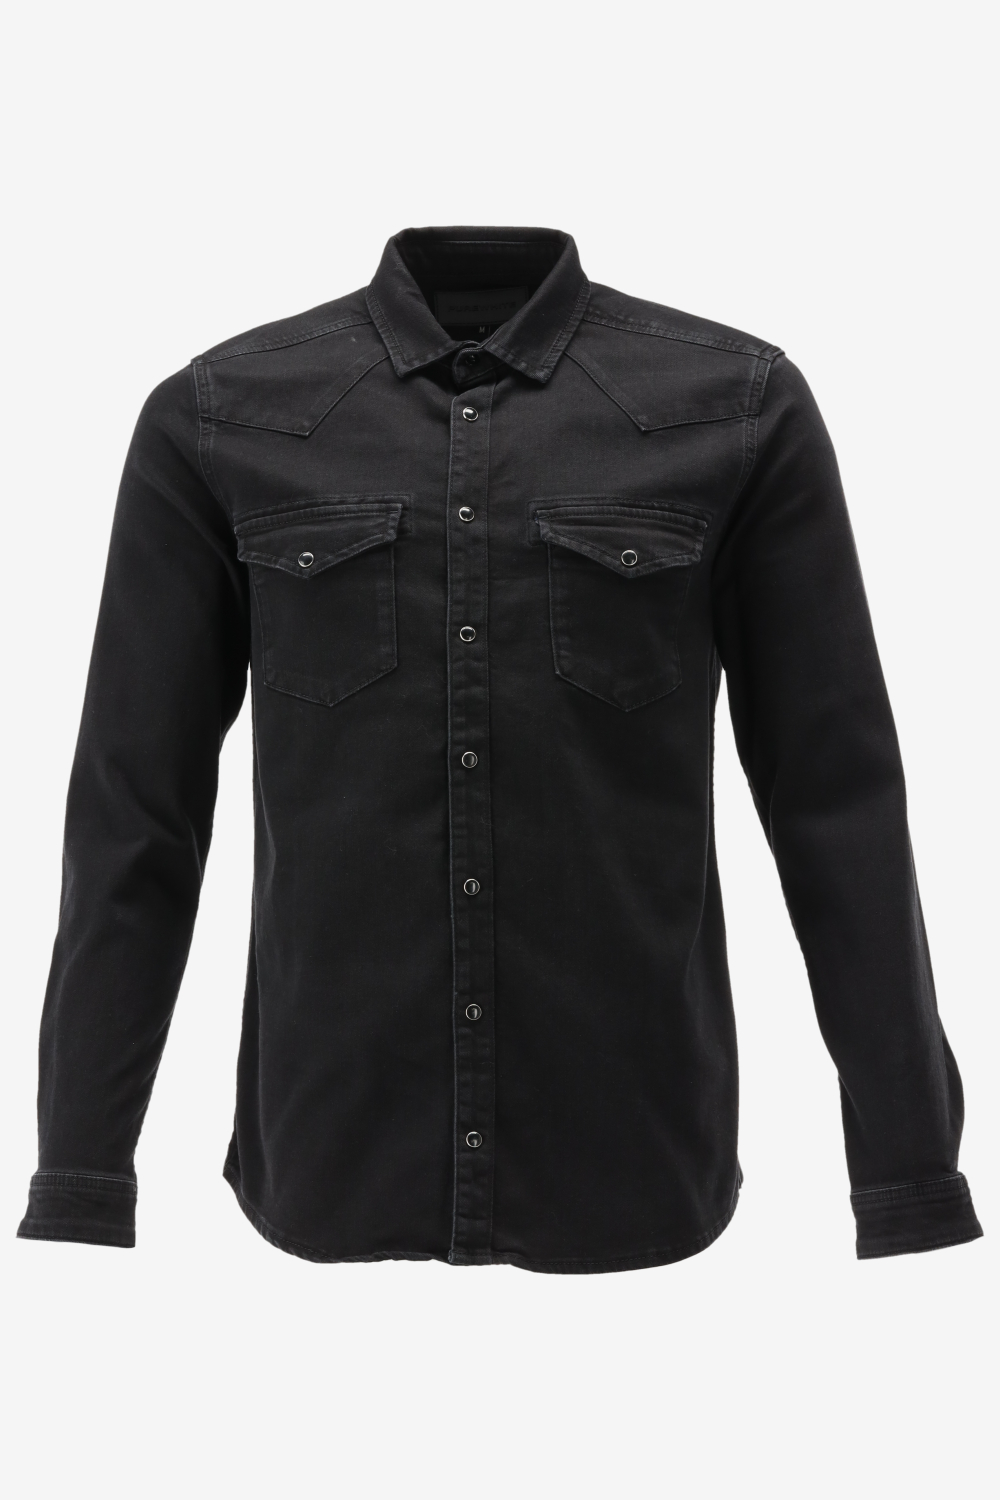 Purewhite - Heren Slim Fit Overhemd - Zwart - Maat S